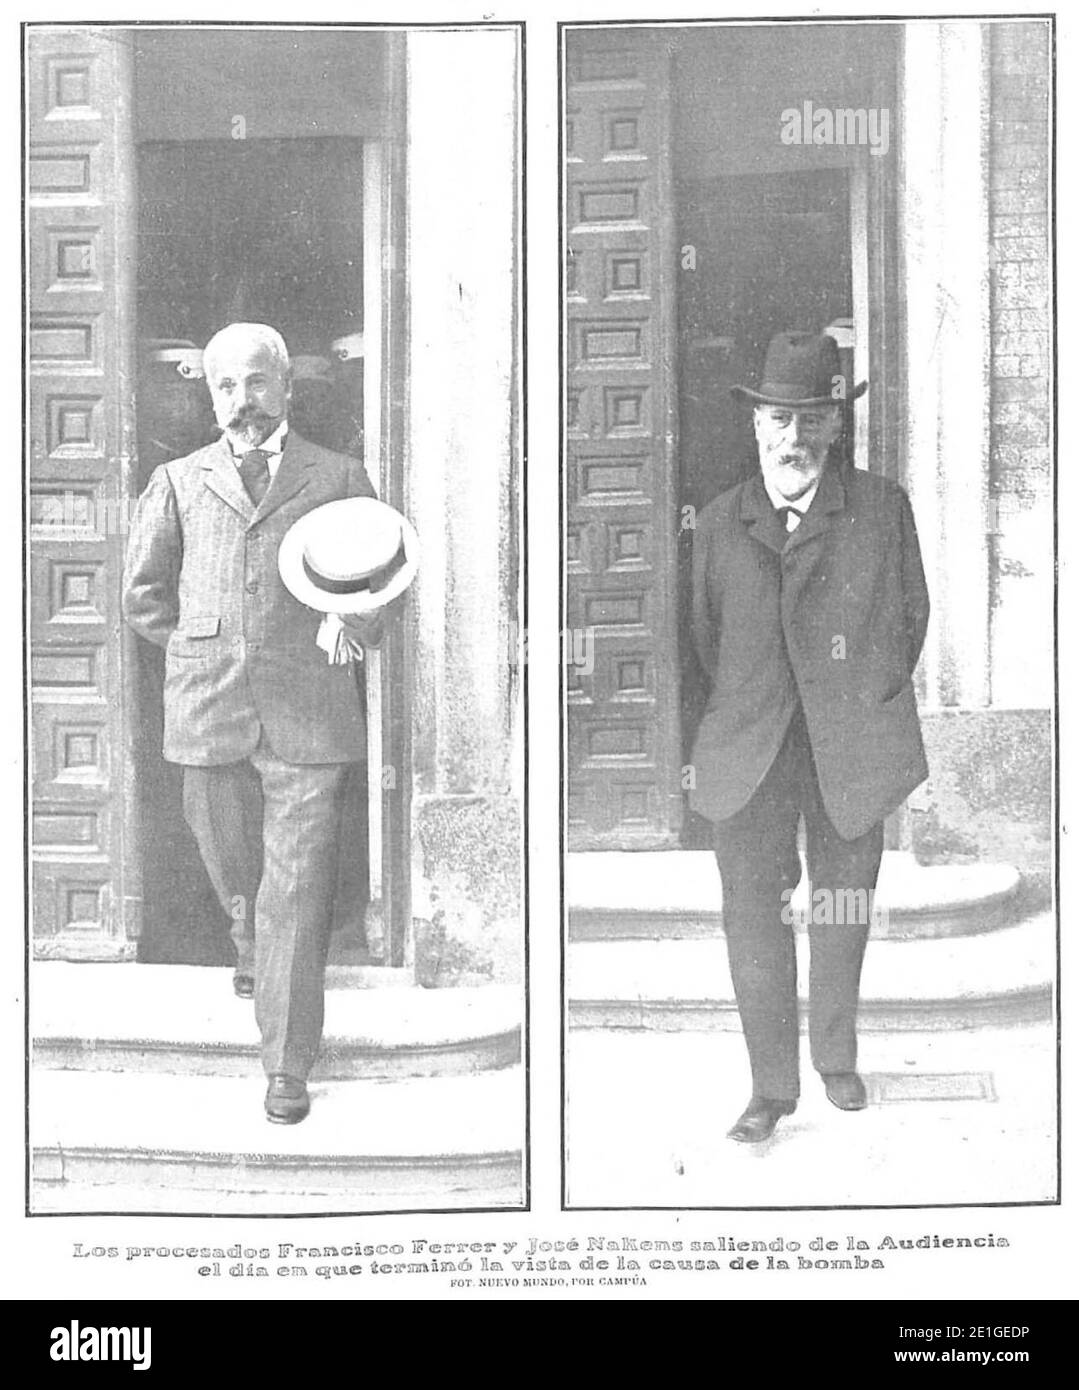 Los procesados Francisco Ferrer y José Nakens saliendo de la Audiencia el día en que terminó la vista de la causa de la bomba, Nuevo Mundo, 27-06-1907. Stock Photo